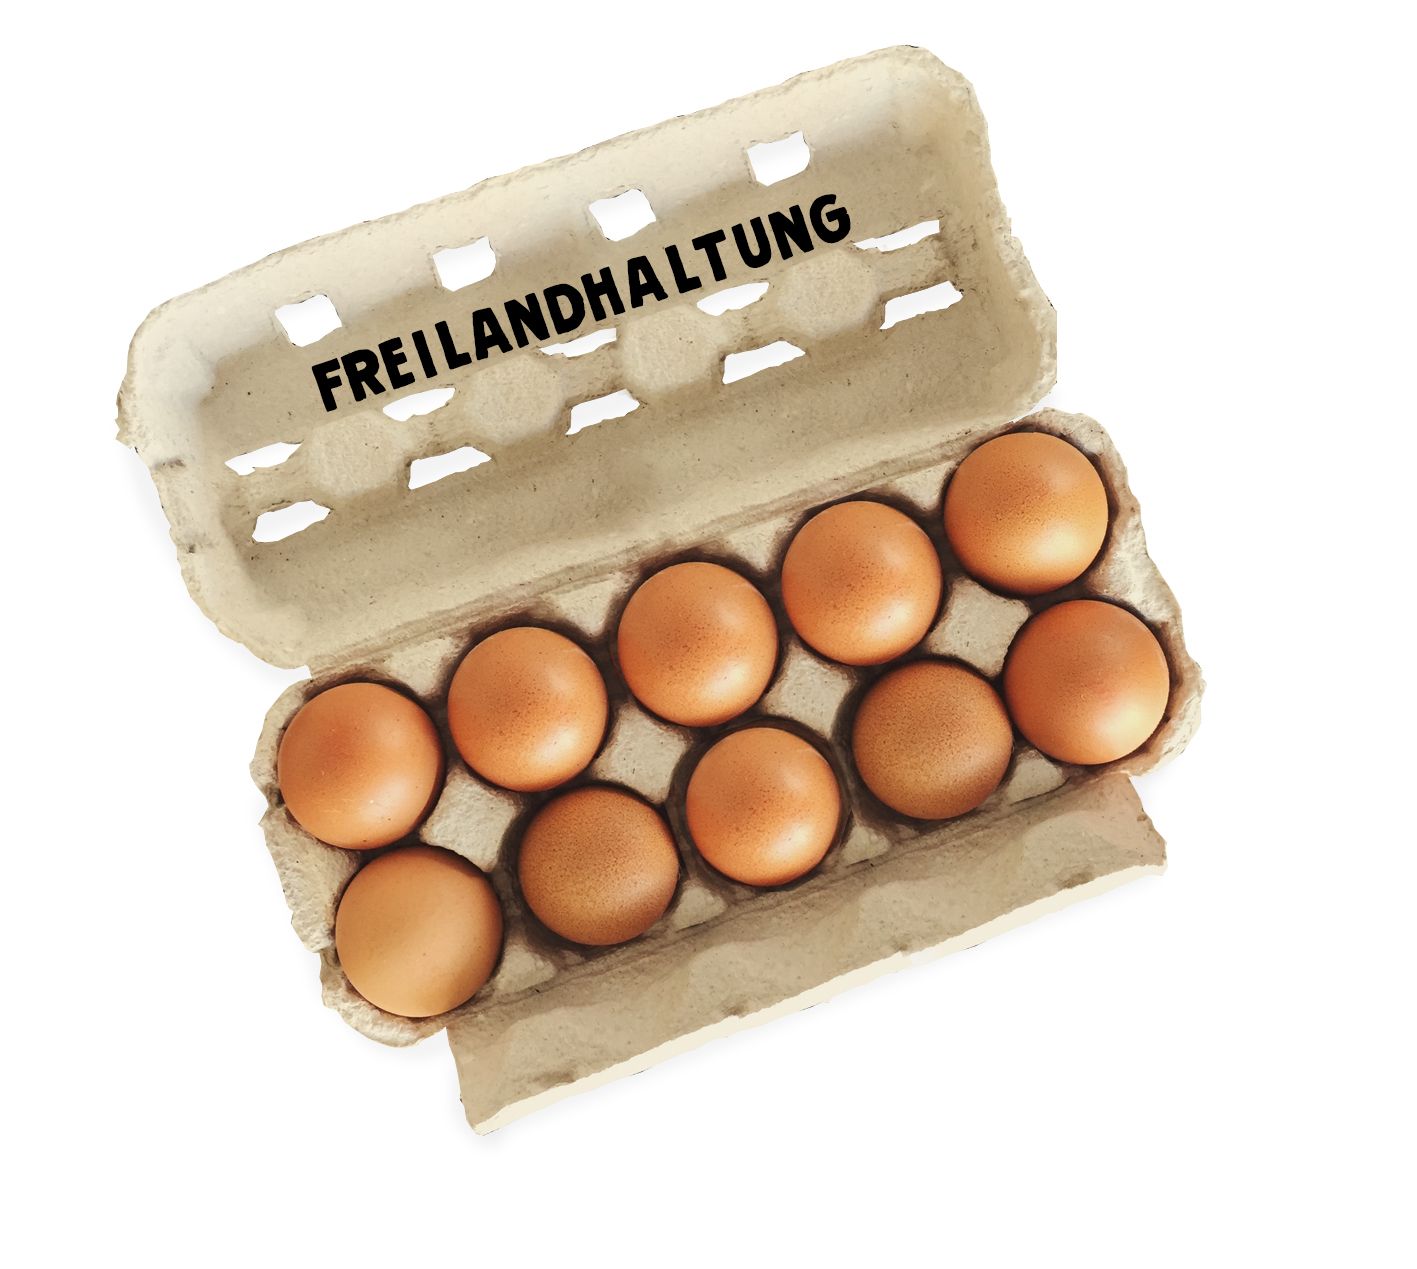 10 Eier Größe L - Freilandhaltung